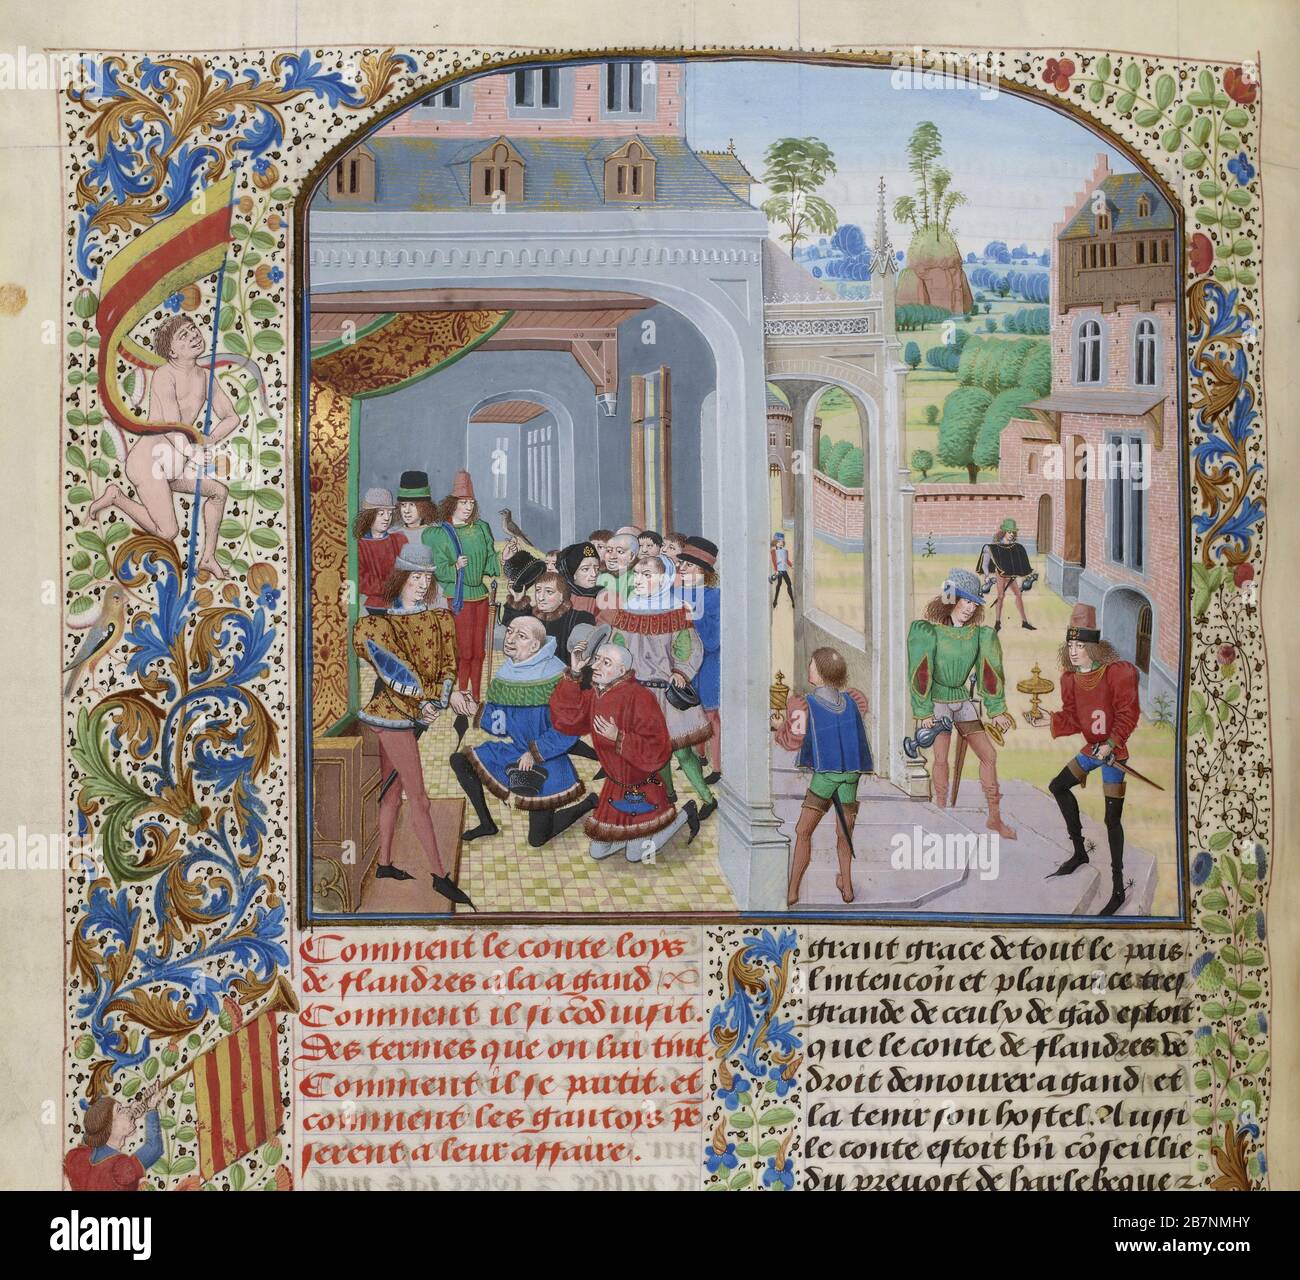 Omaggio di Luigi II di Male da parte di una deputazione di Gand (miniatura delle Grandes Chroniques de France di Jean Froissart), ca 1470-1475. Trovato nella Collezione di Biblioth&.xe8;que Nationale de France. Foto Stock